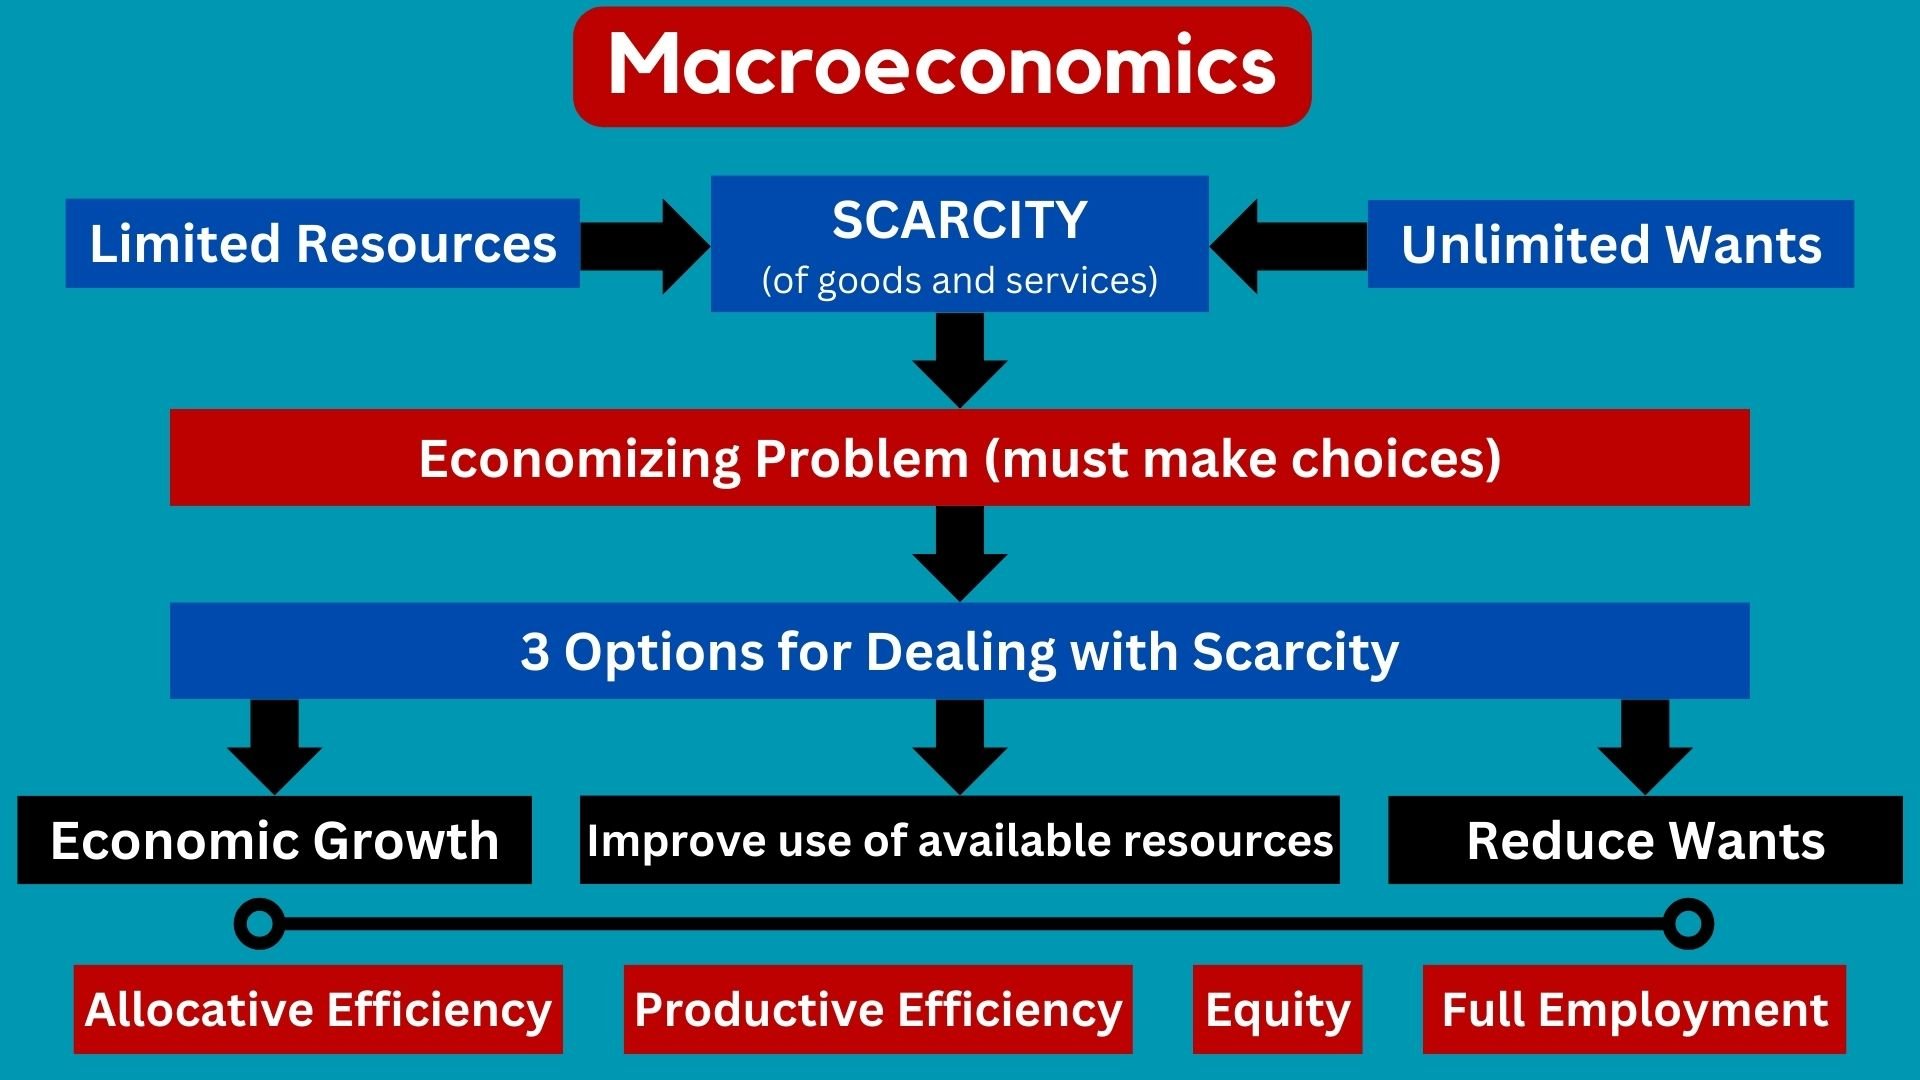 In depth look at macroeconomics